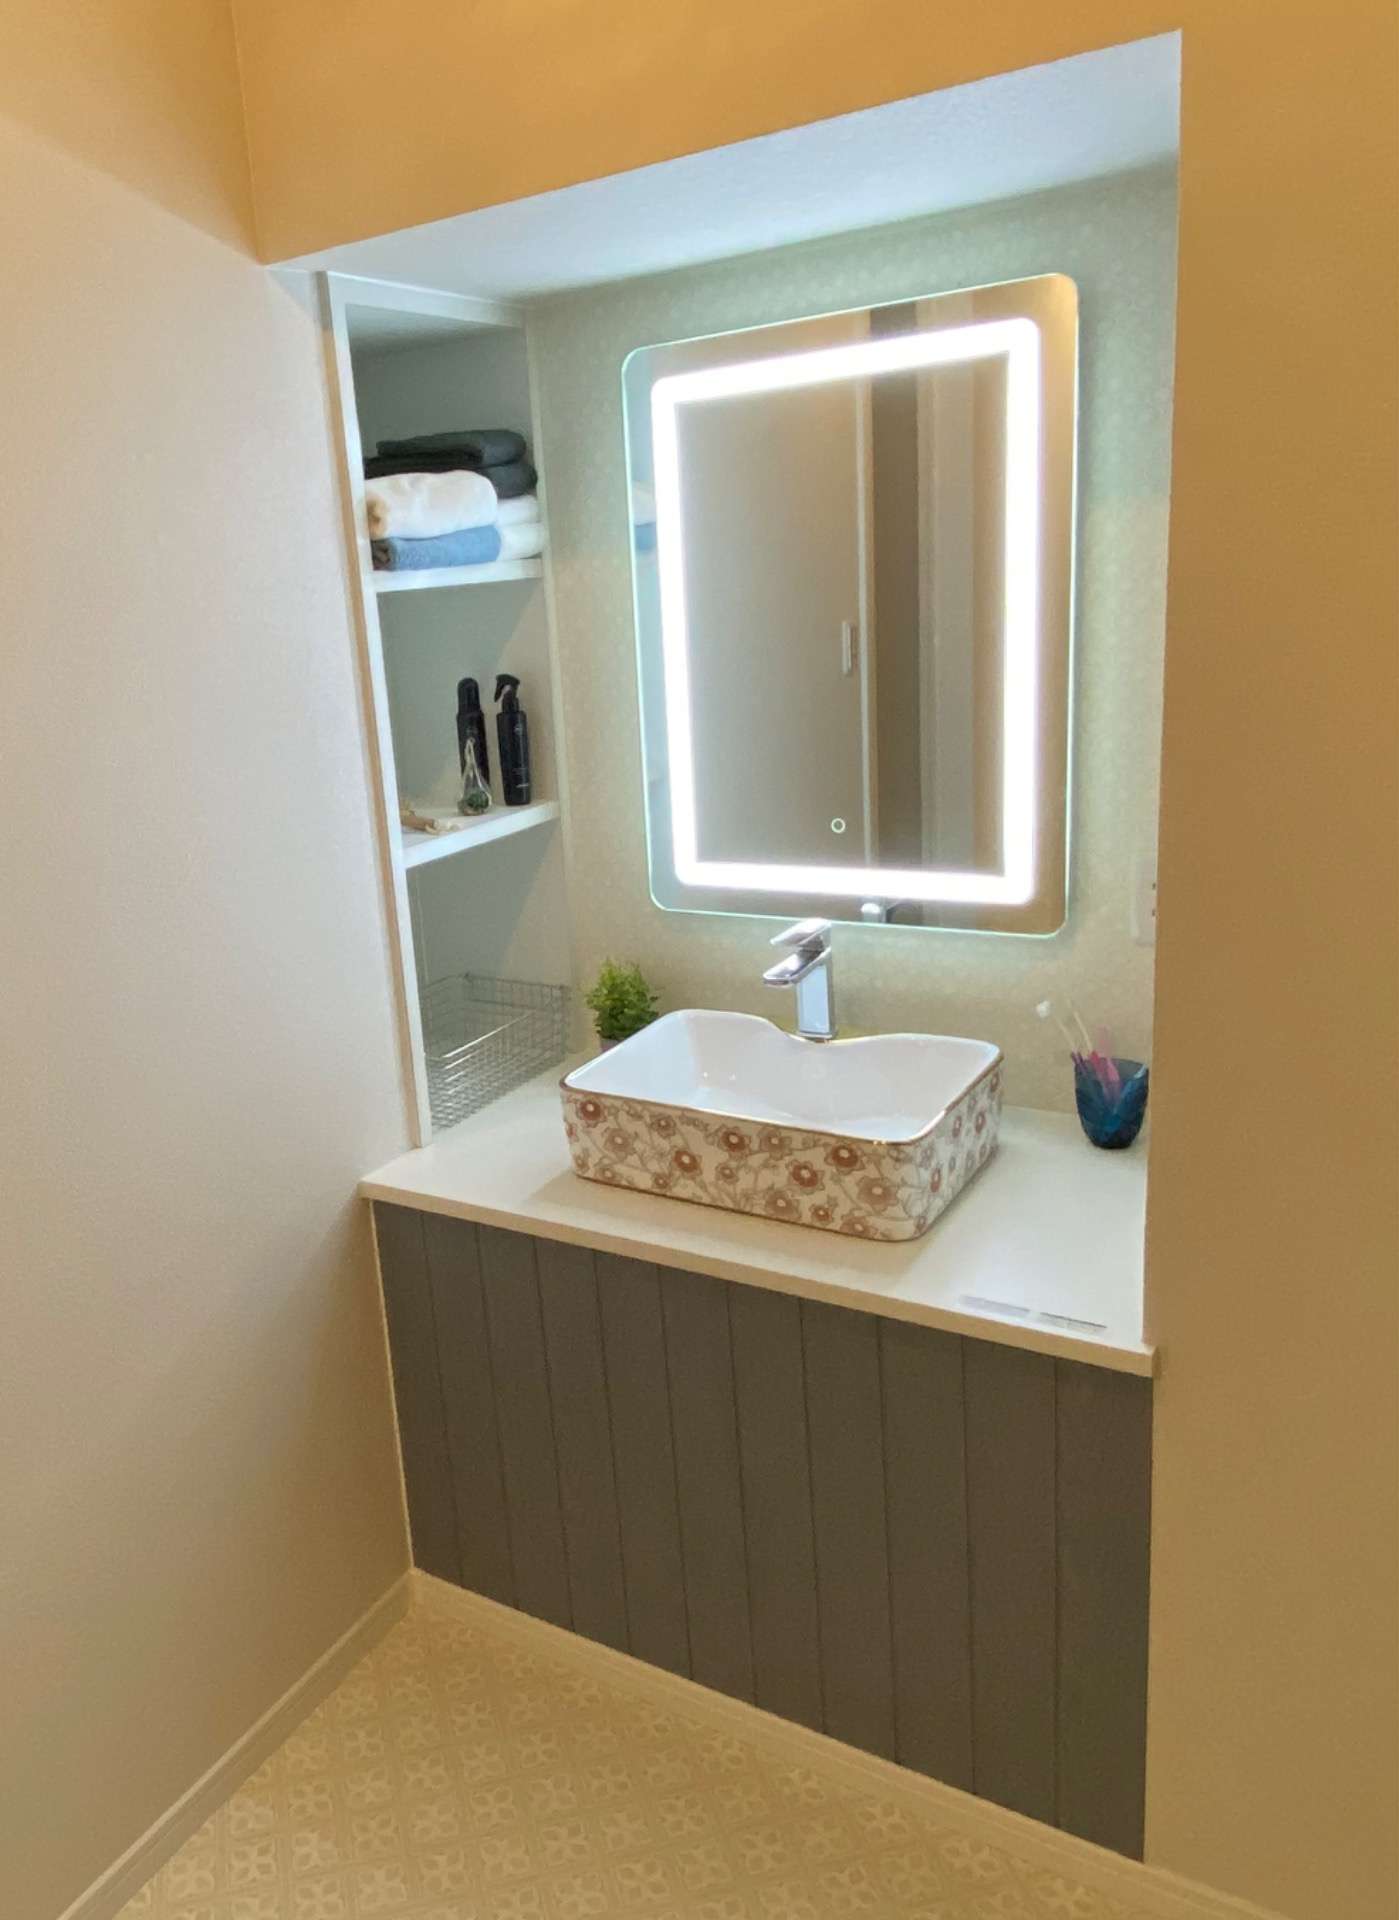 【ミラーライトで作る素敵な洗面空間】宮崎市で新築・リノベーション| mikiデザインハウス